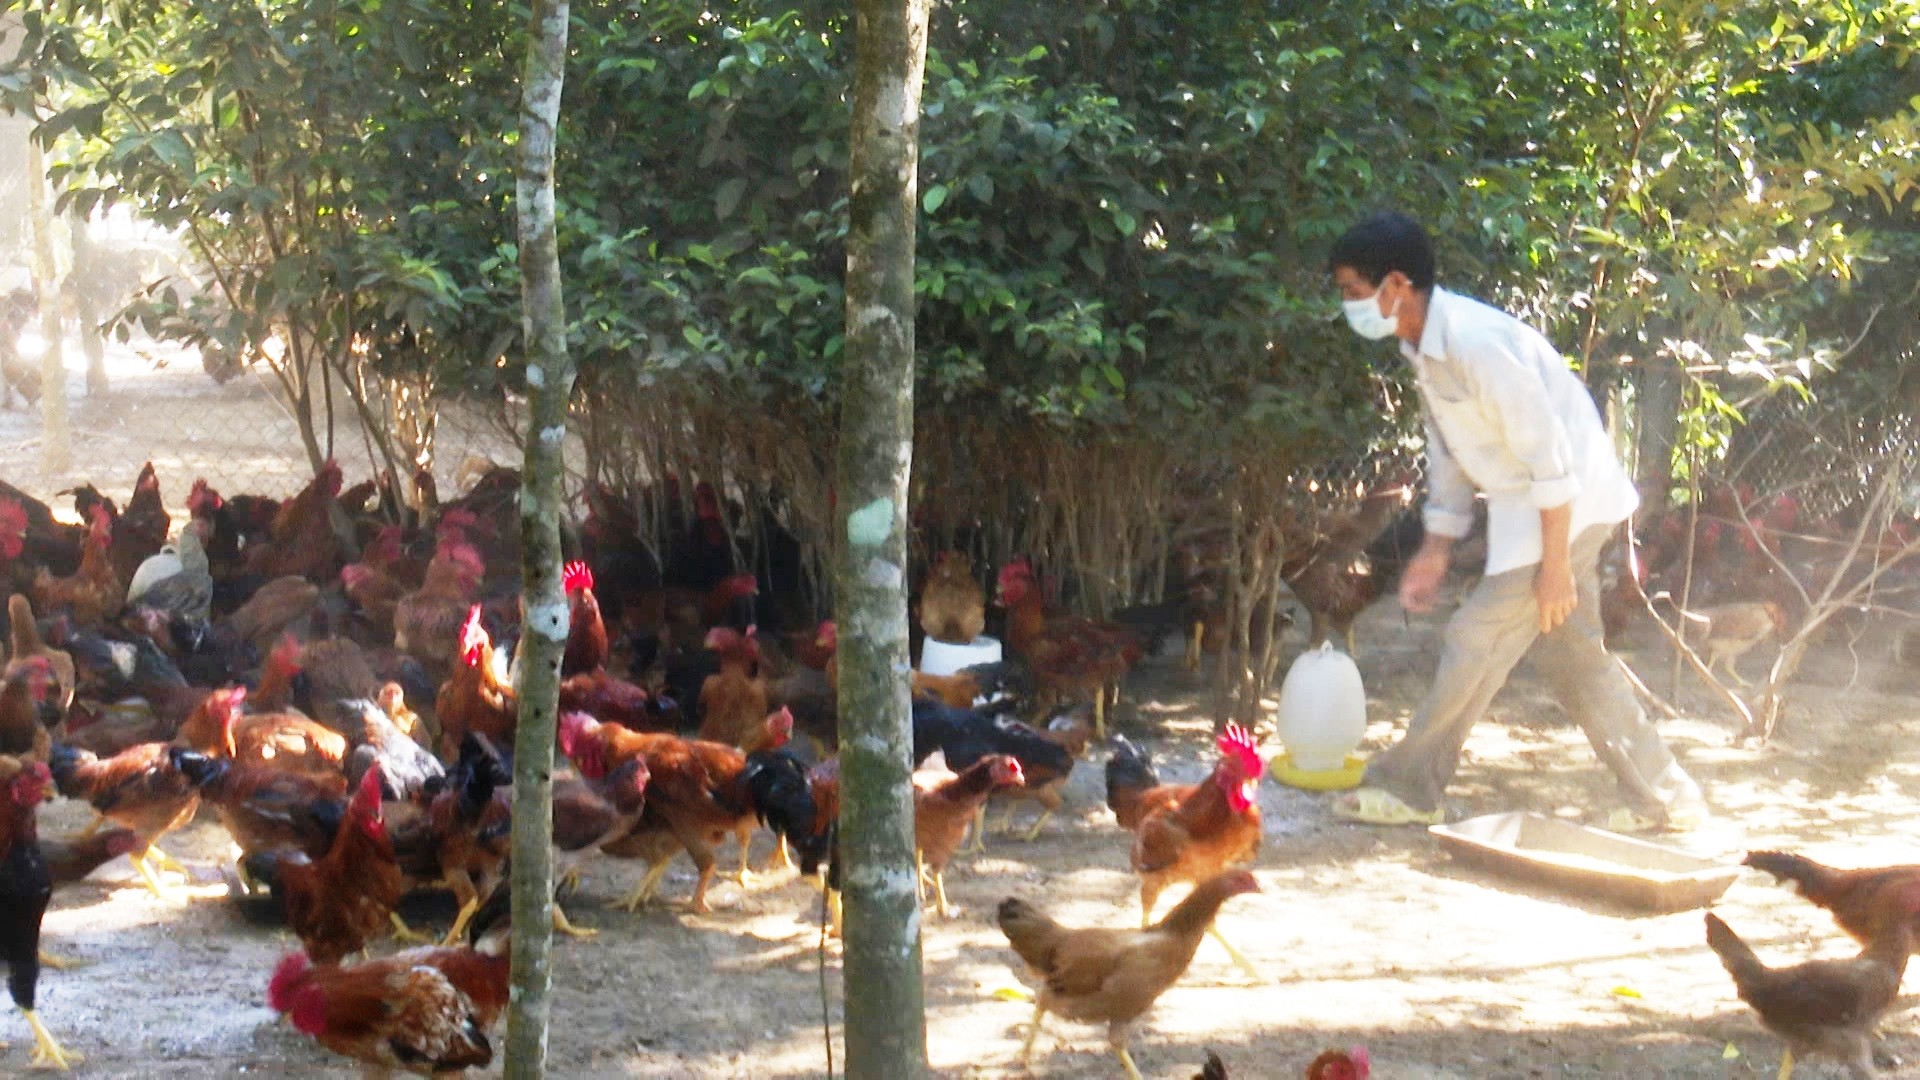 
Thời gian khoảng 12 năm về trước, nắm bắt được nhu cầu của thị trường về gà thịt chất lượng cao thì vợ chồng của ông Phan Văn Hoạt đã bàn tính đầu tư xây dựng chuồng trại nuôi giống gà thả vườn
